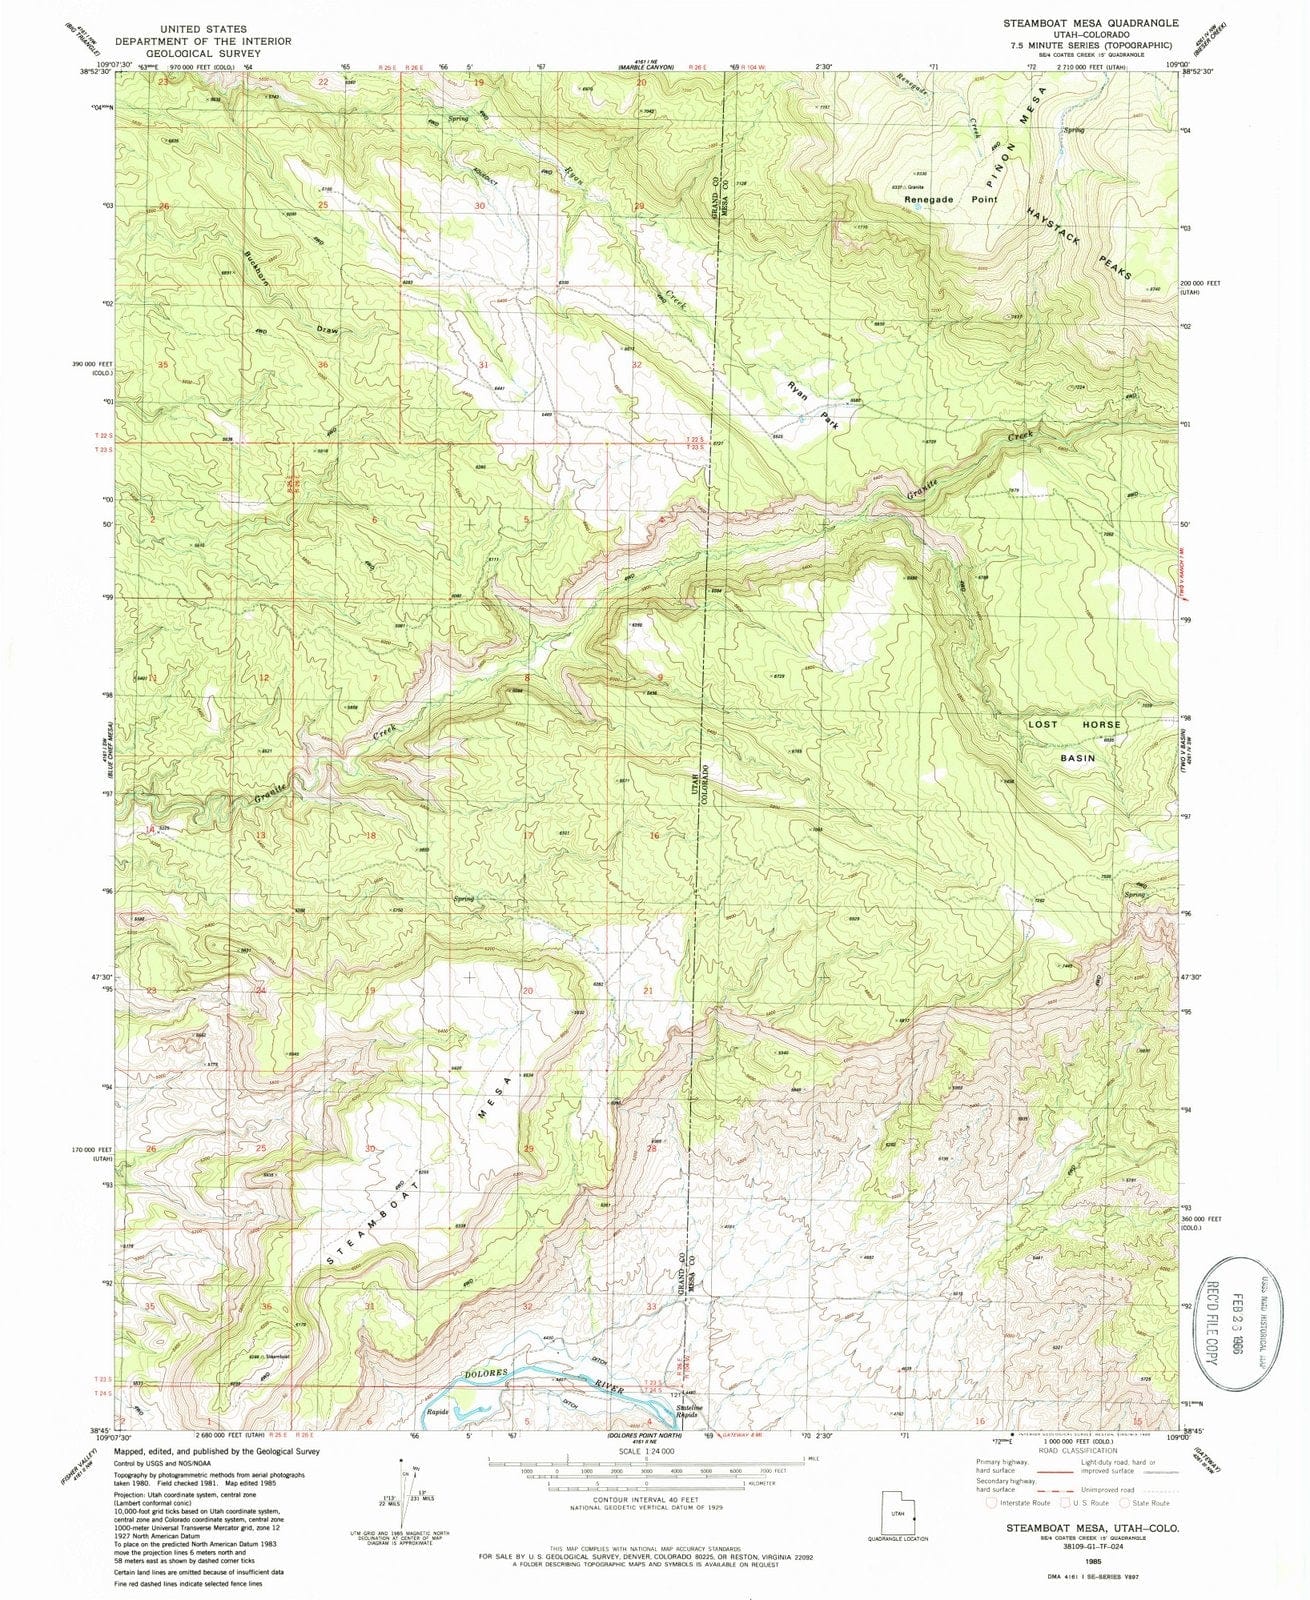 1985 Steamboat Mesa, UT - Utah - USGS Topographic Map